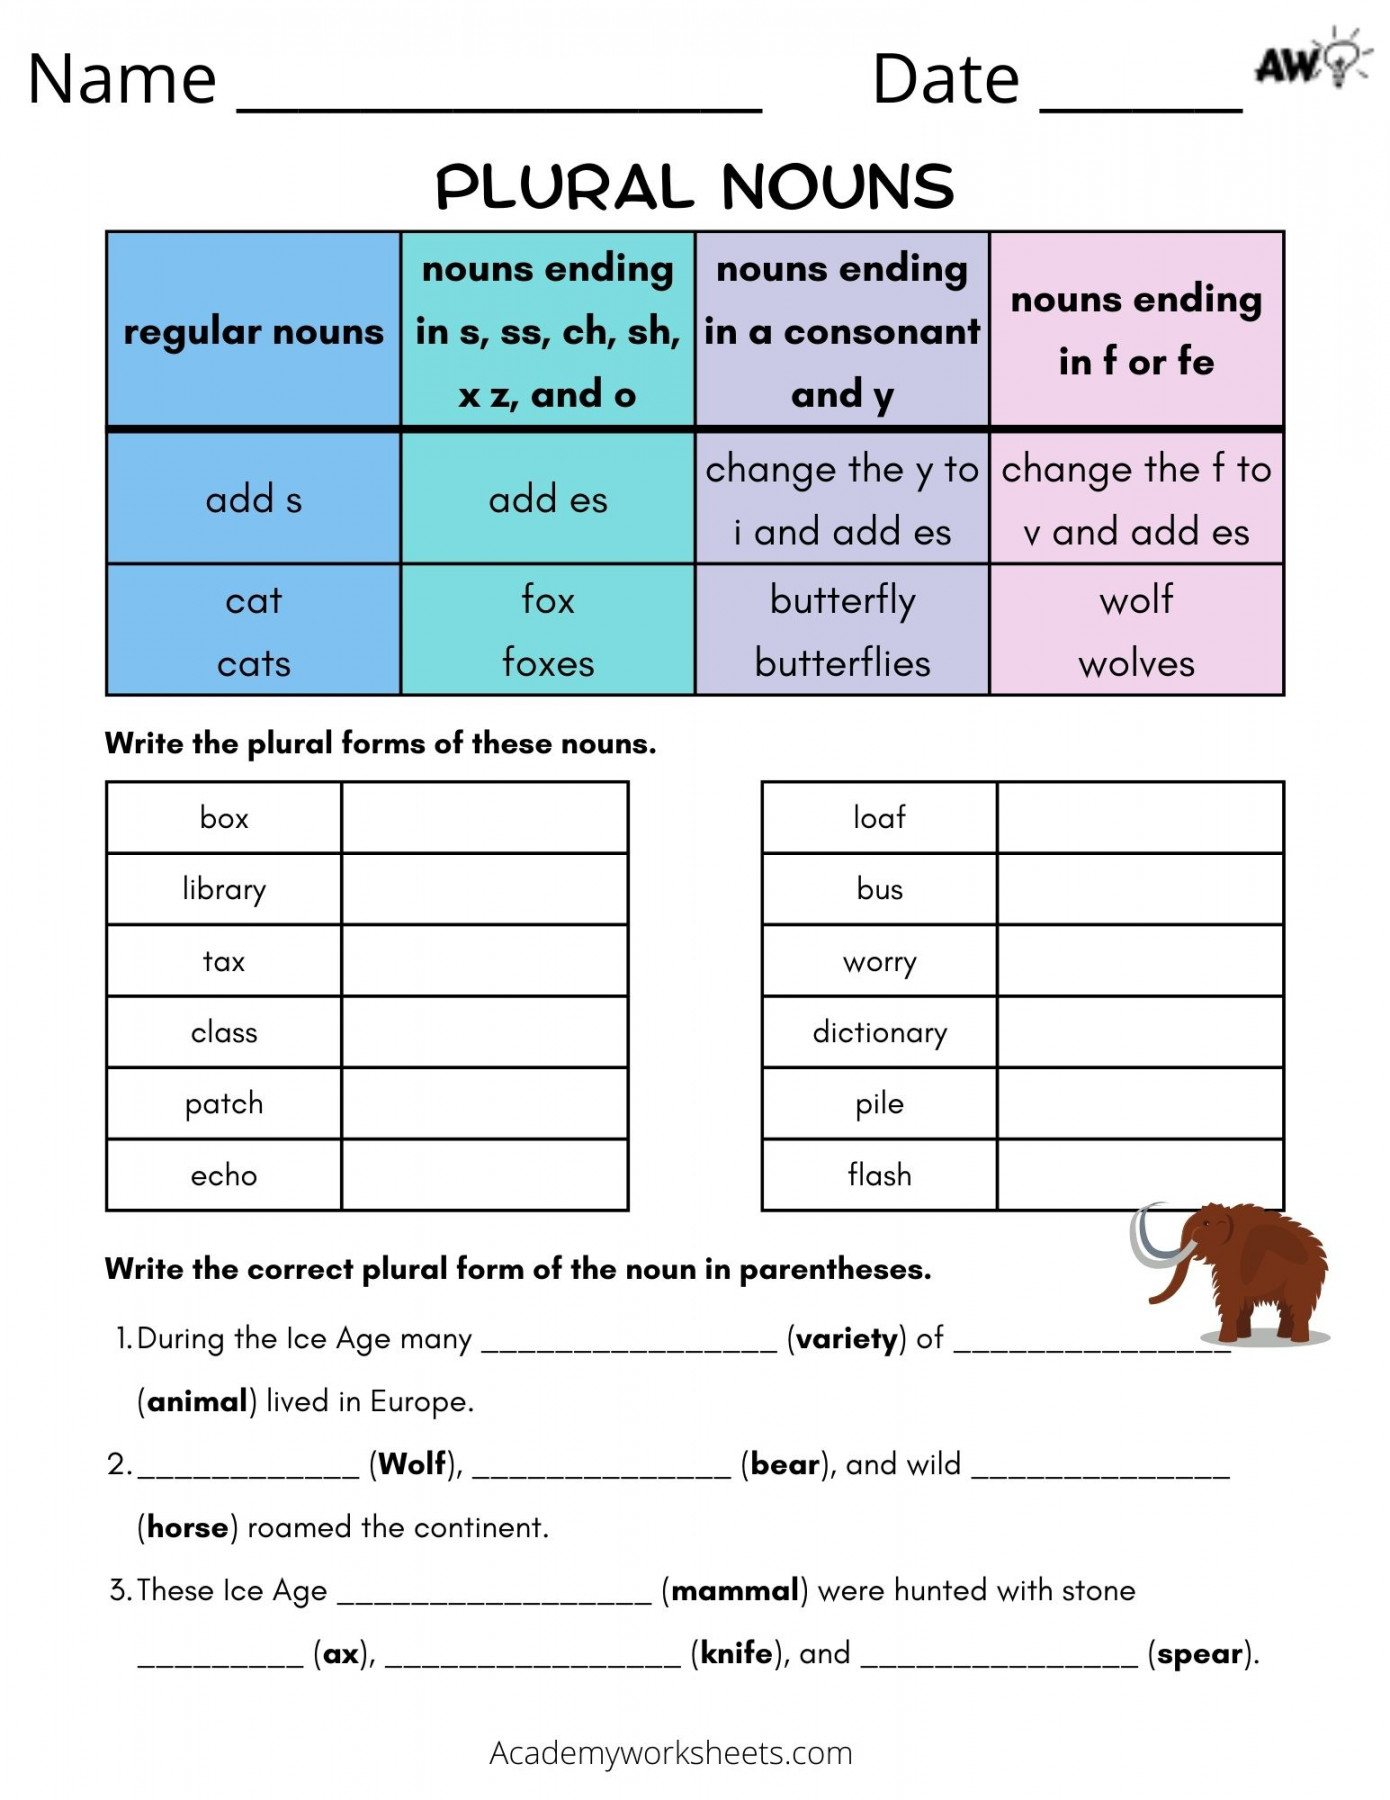 Irregular Plural Nouns - Worksheets - Academy Worksheets